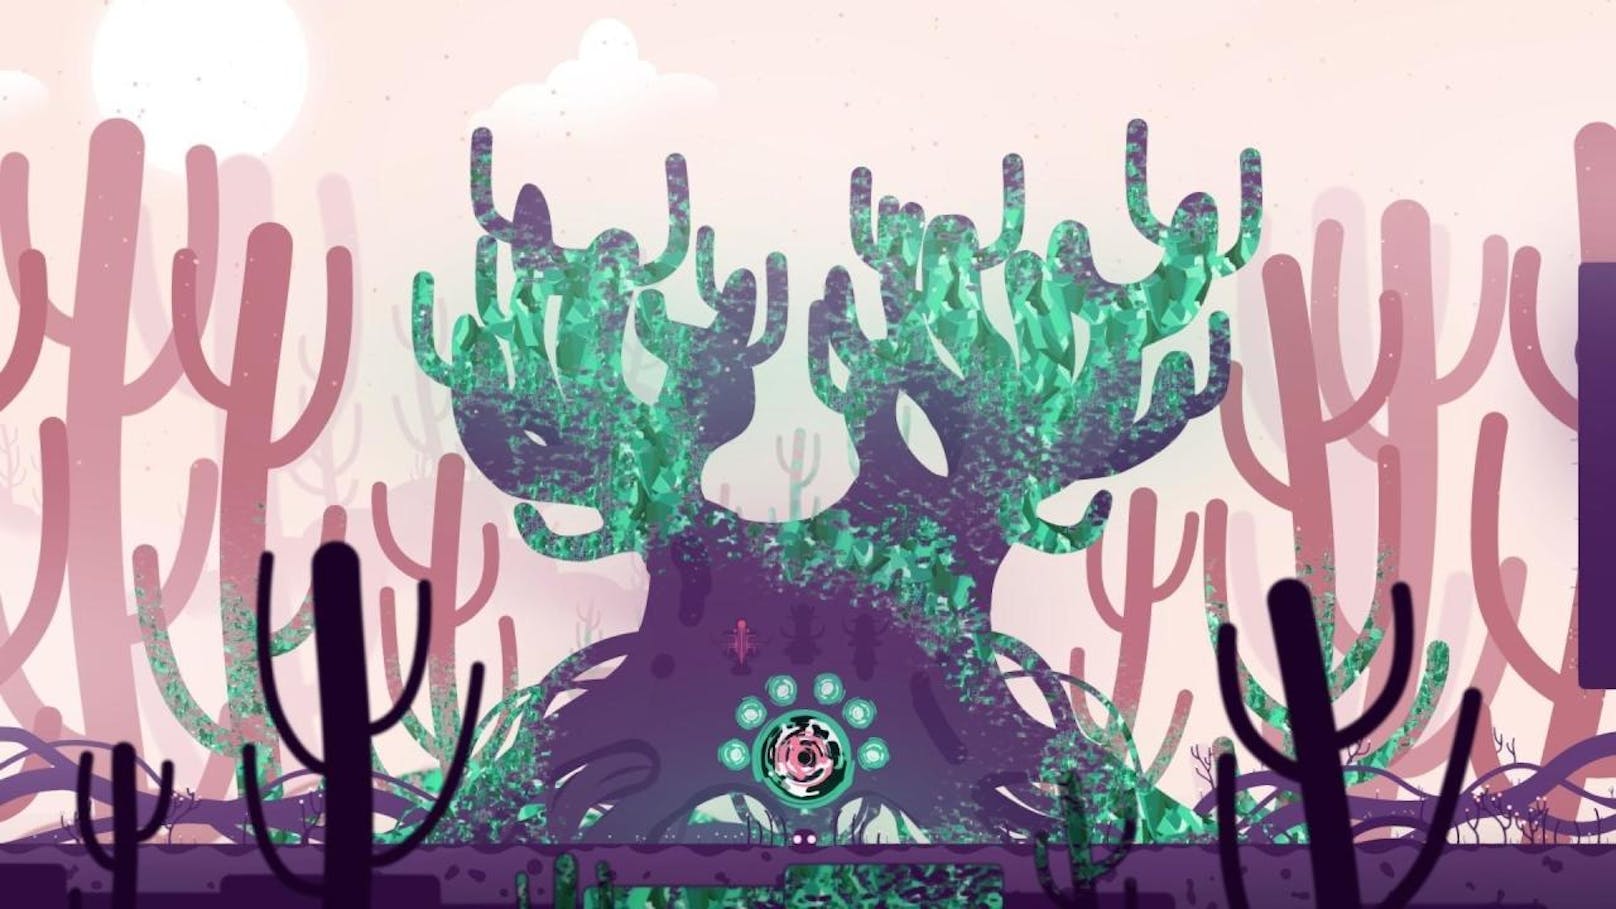 Im Game für PC und Nintendo Switch schlüft man in die Masse einer geleeartigen Figur. Das Wesen sieht sich einer Bedrohung gegenüber, bei der Pflanzen, Bäume, Sträucher und Co. von einer Art Seuche in Form eines giftgrünen Pixelgemischs befallen werden.